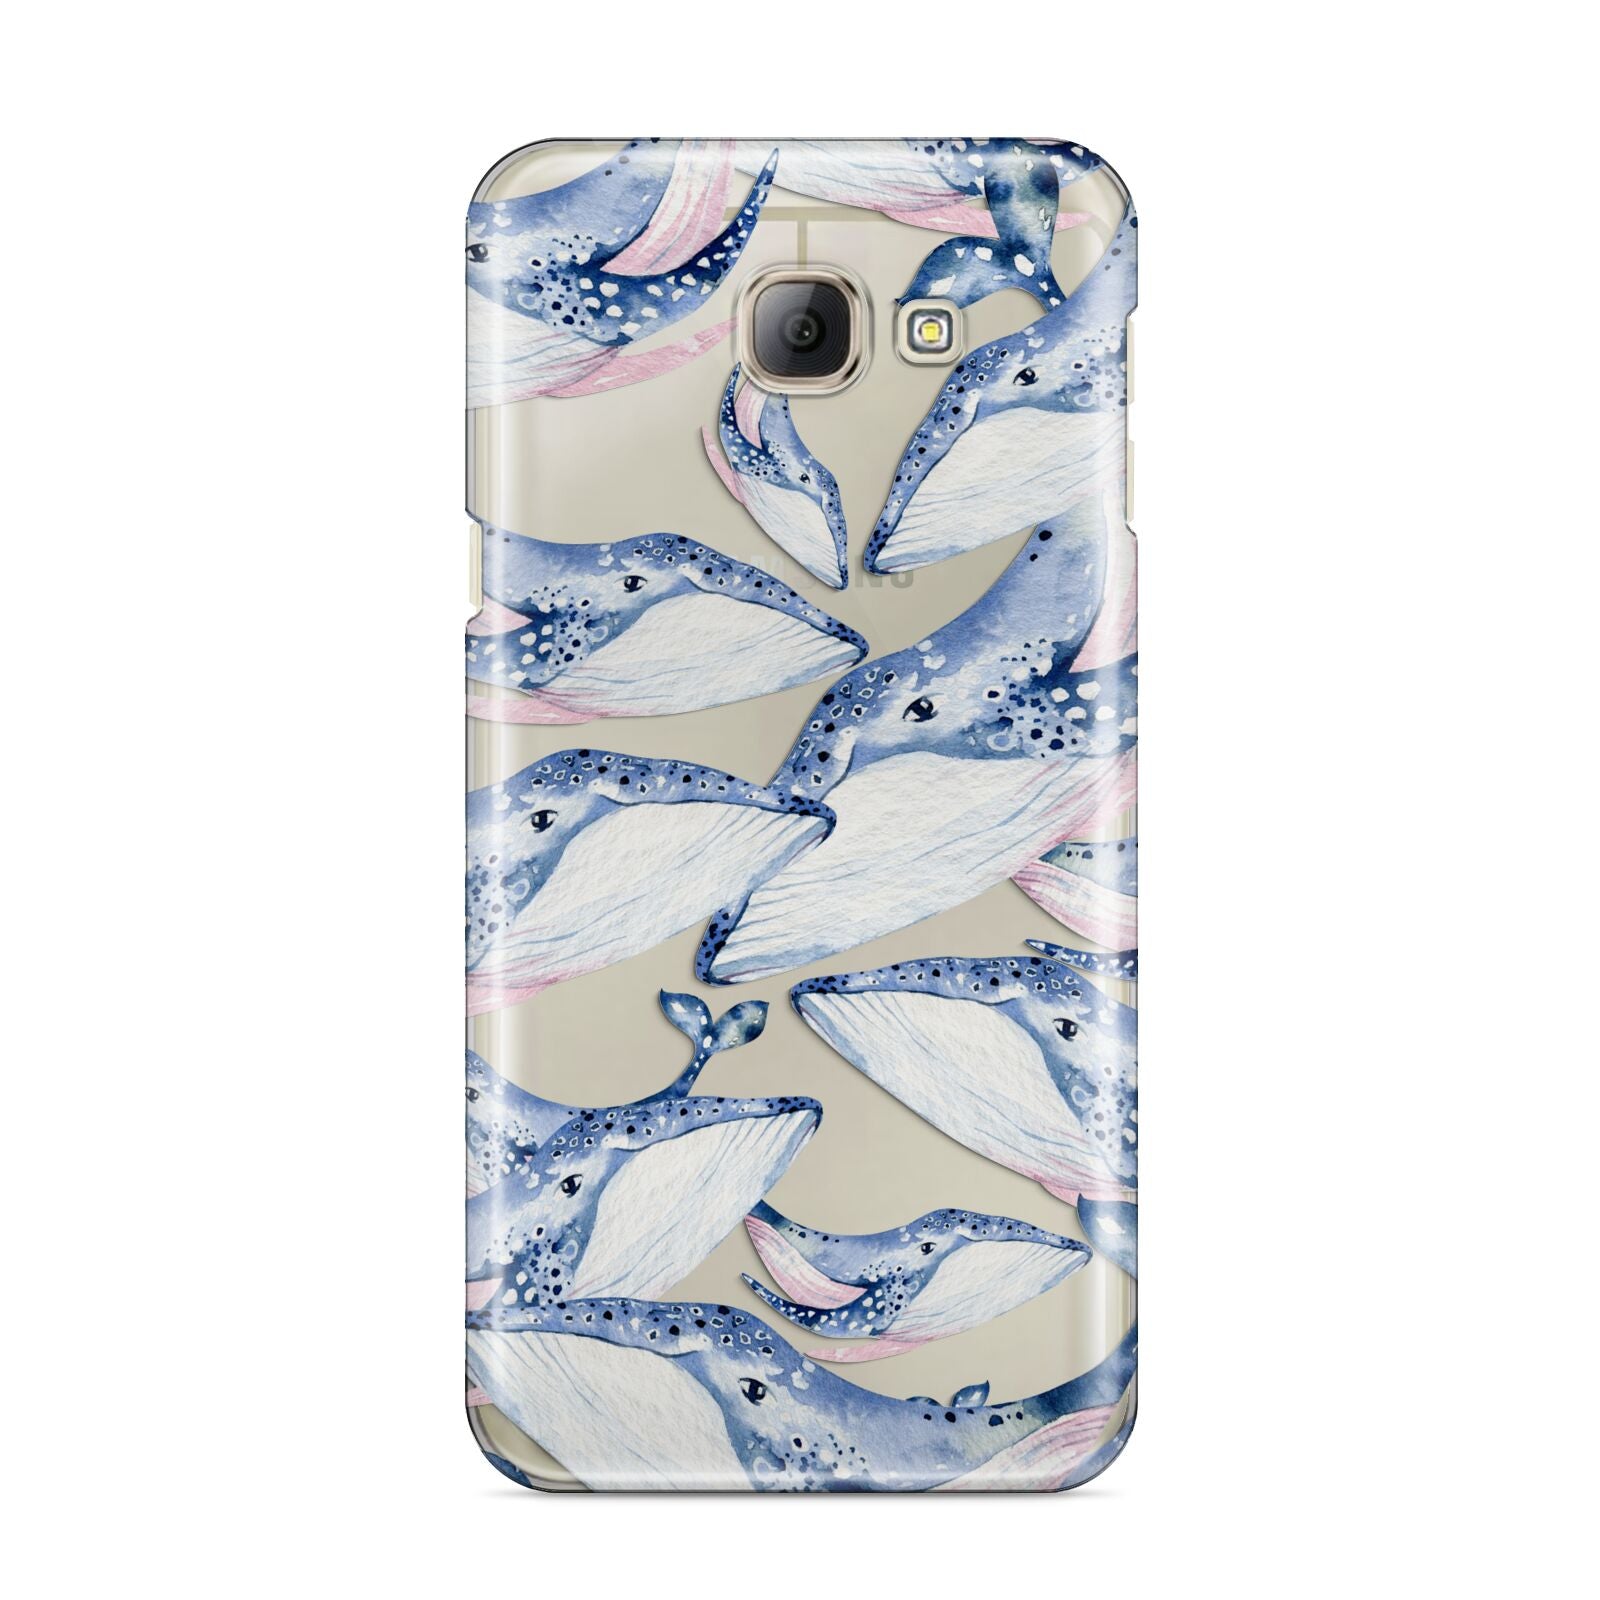 Whale Samsung Galaxy A8 2016 Case